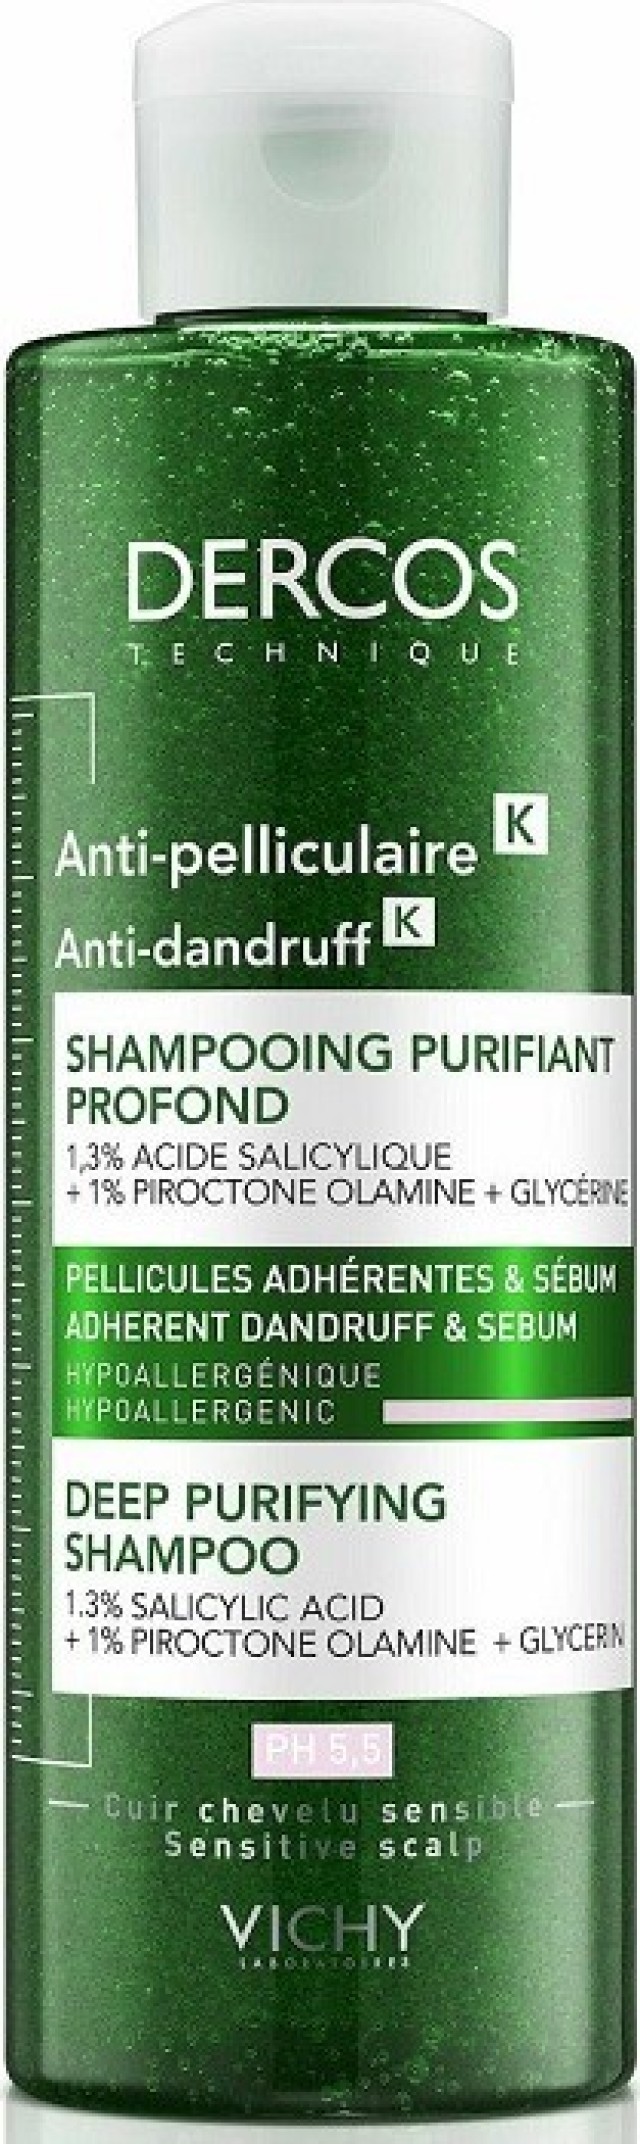 Vichy Dercos Anti-Dandruff K Deep Purifying Shampoo Σαμπουάν Κατά της Πιτυρίδας 250ml